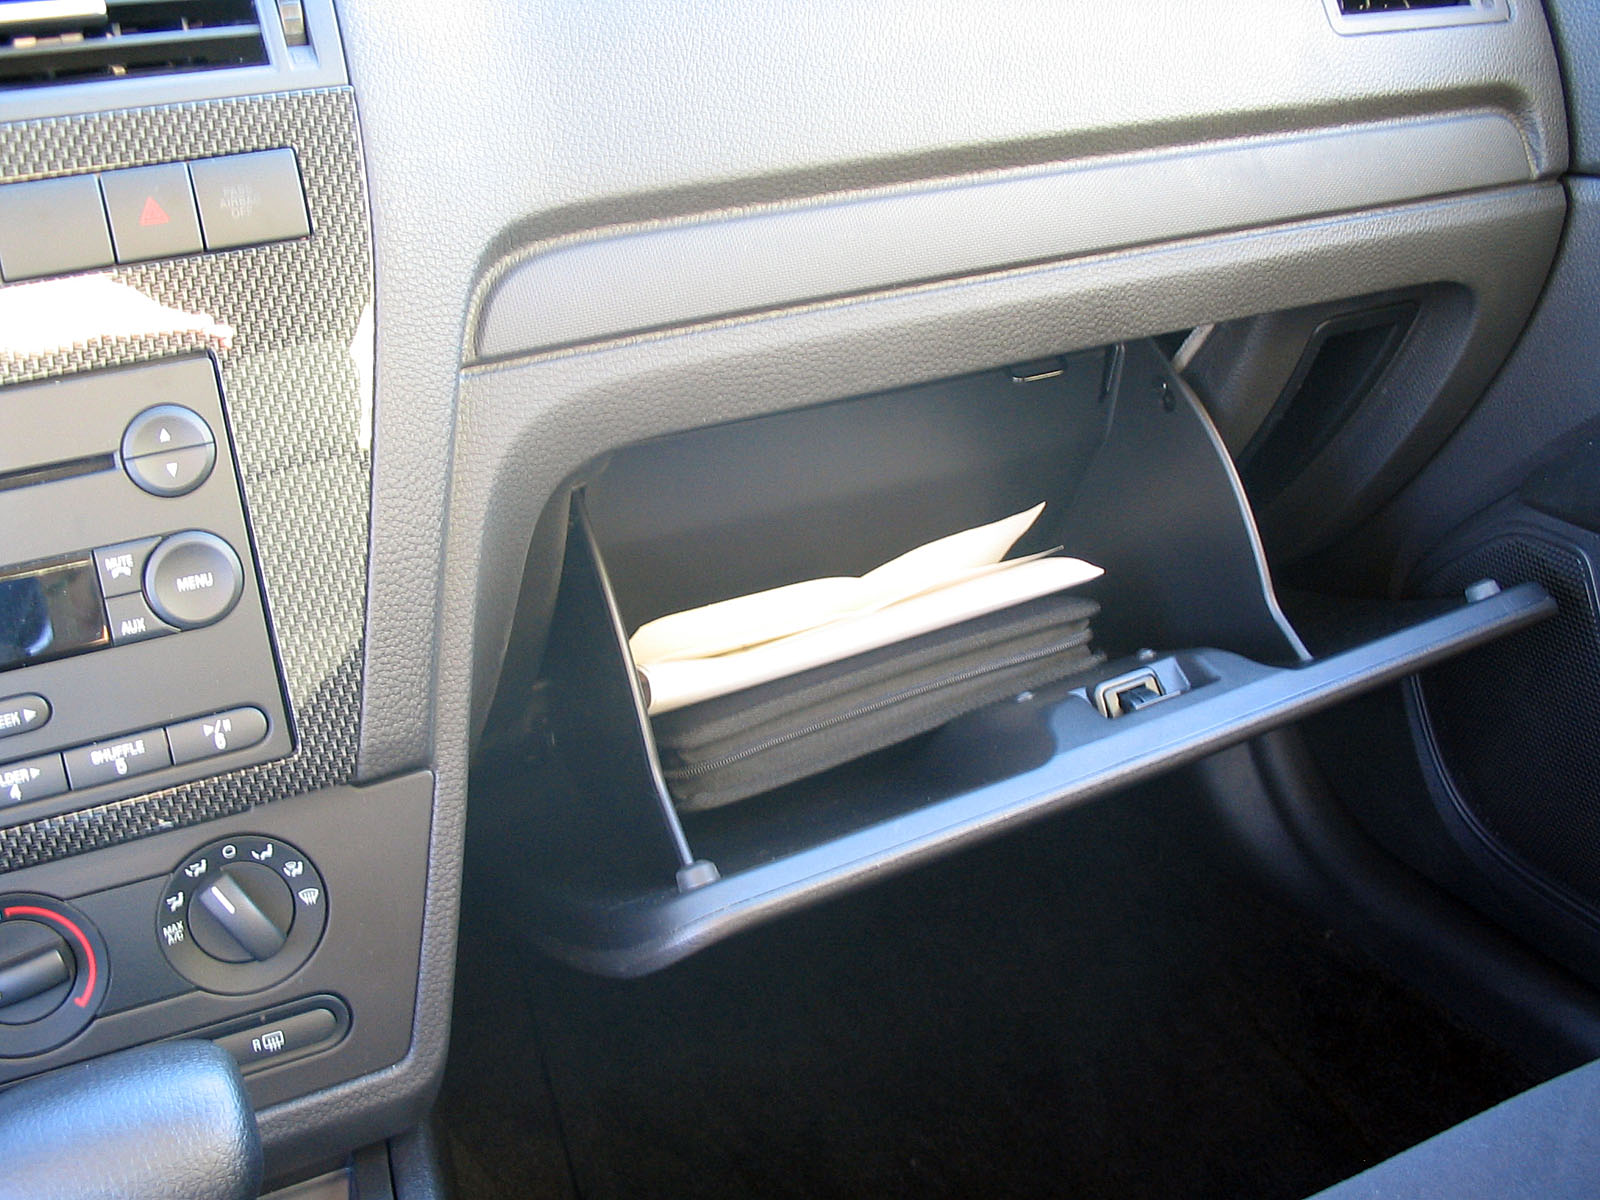 Glove compartment - Wikipedia